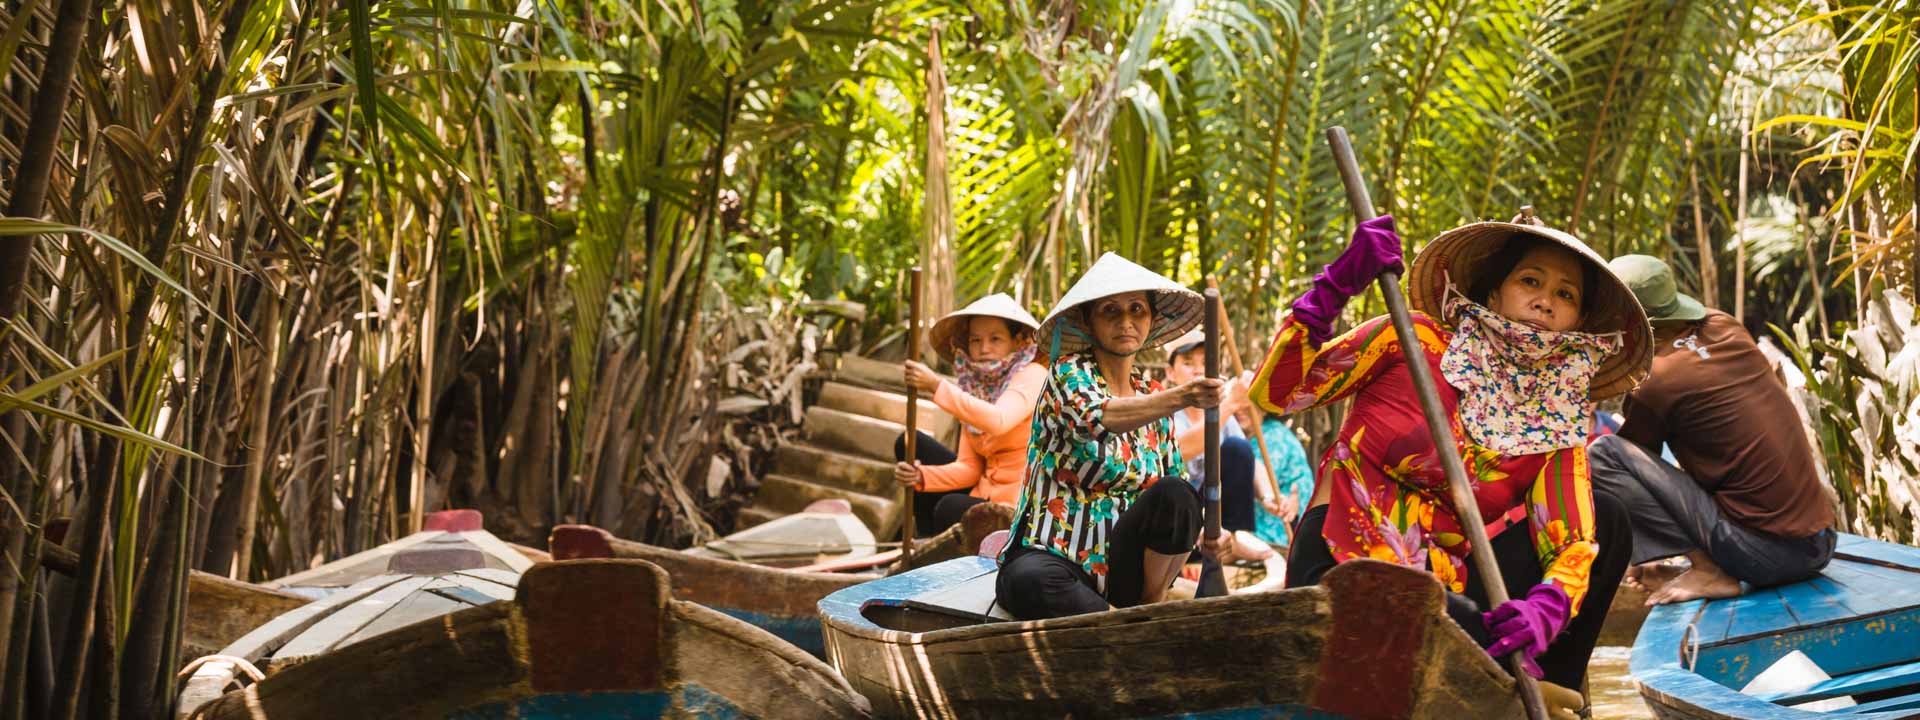 Bassac Crociera sul Fiume di Mekong 2 Giorni